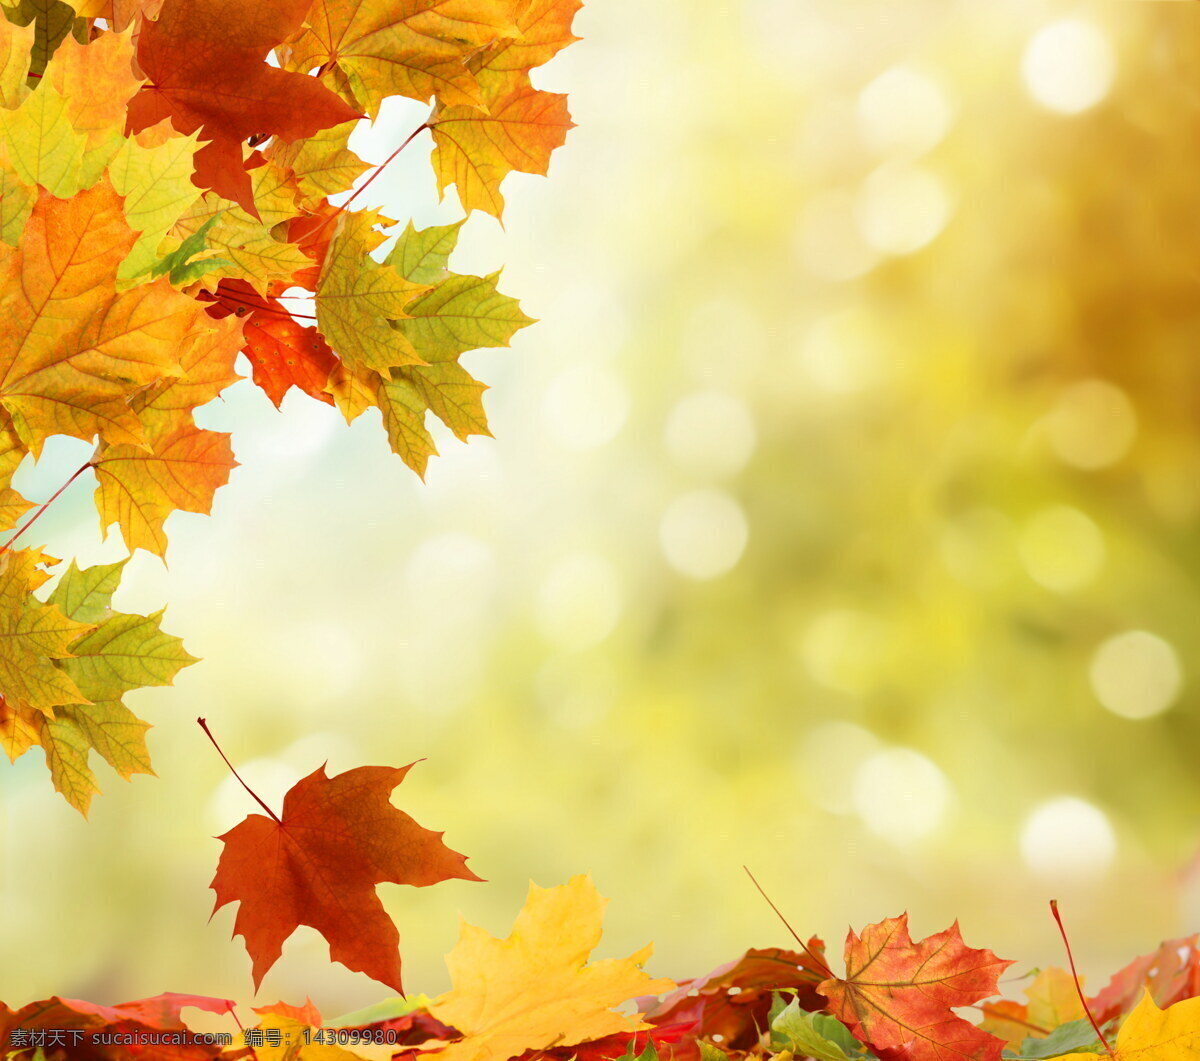 树叶 素材图片 叶子 枫叶 秋天 秋季 景观 景区 自然风光 旅游 背景 花草树木 生物世界